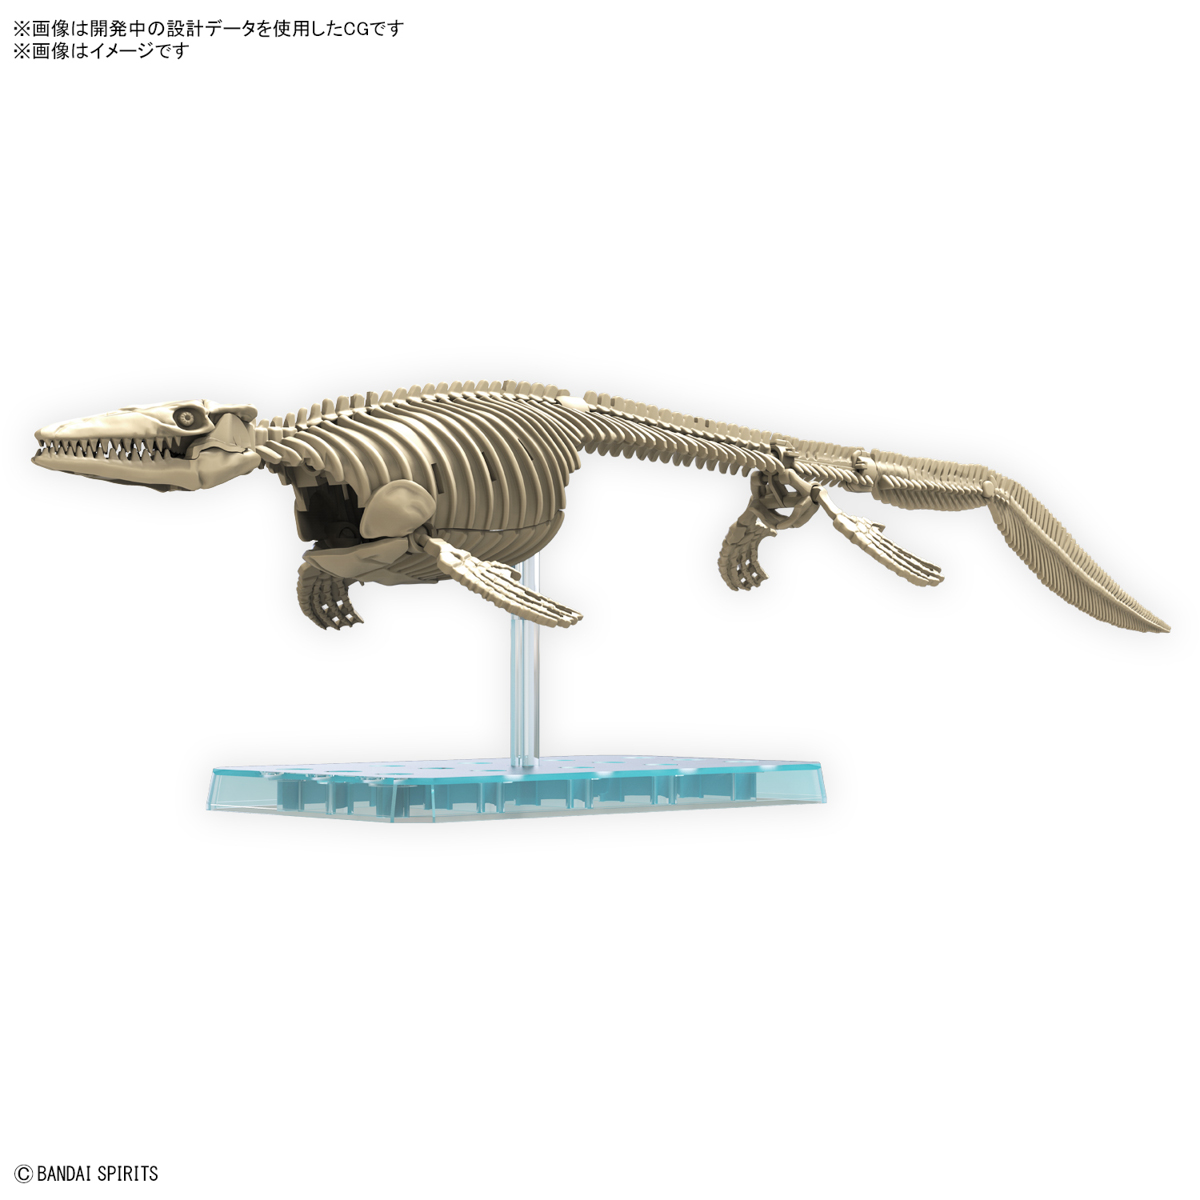 プラノサウルス『モササウルス』プラモデル-002